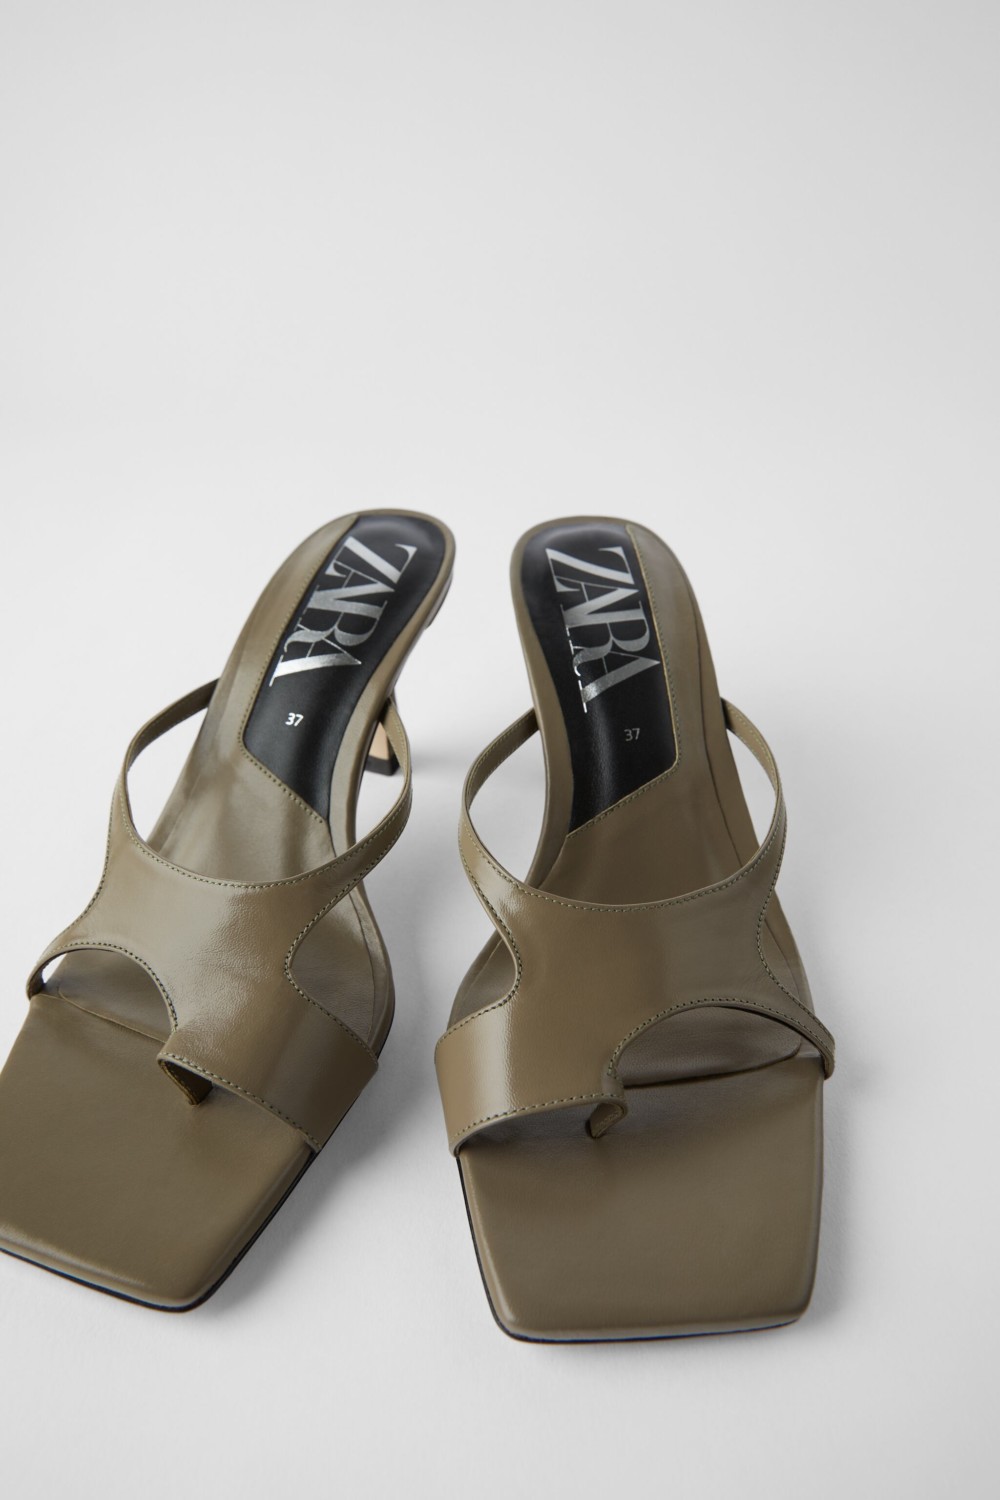 Blog Mode Chaussures Tendance été 2020 Mules Talon Sandales Bout Carré Sandales Brides 8